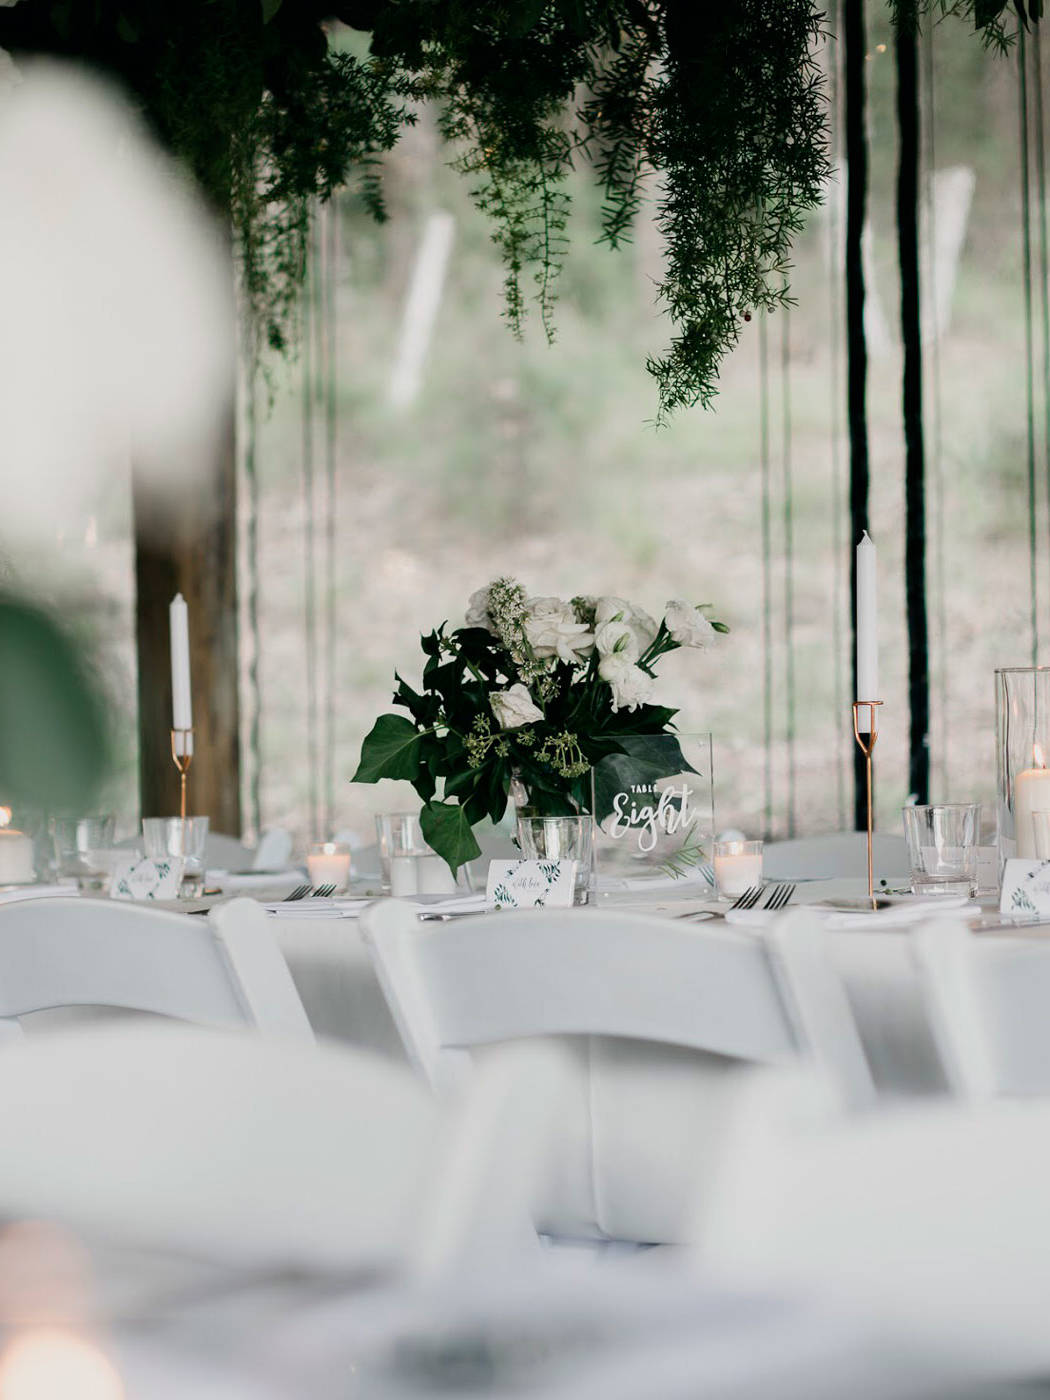 Wedding Table Arrangement